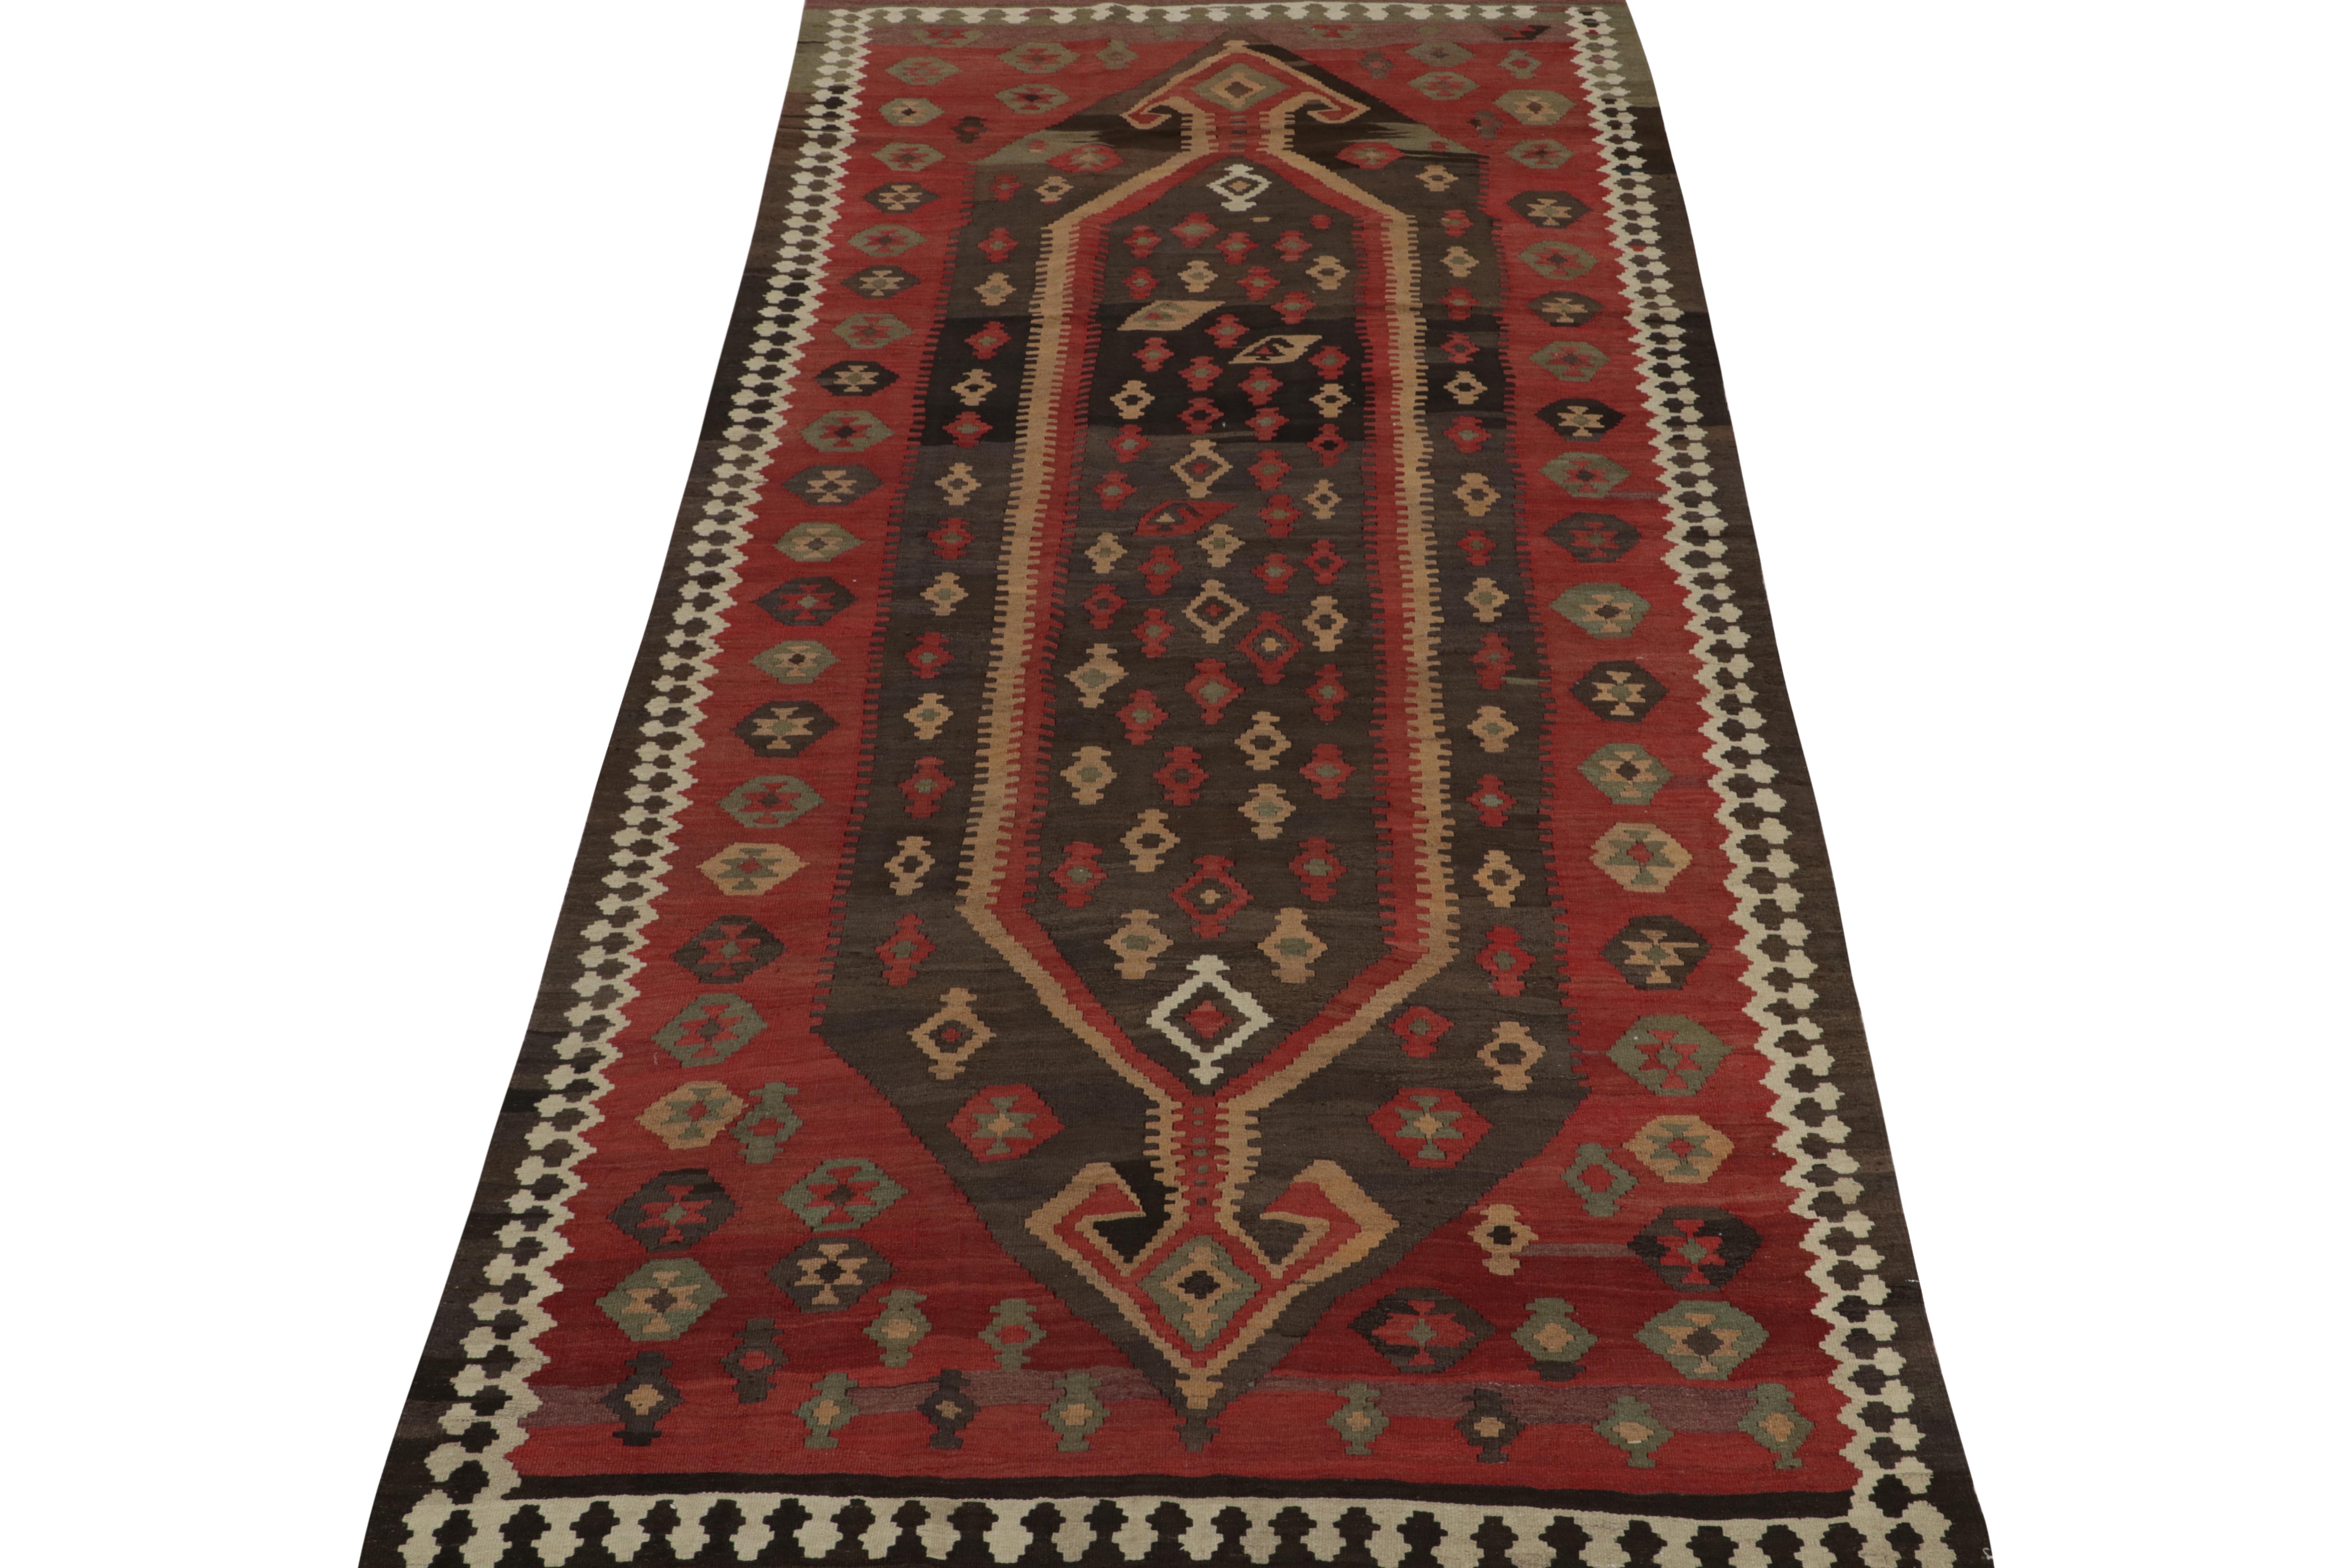 Ce kilim persan vintage de 5x11 est un tapis Shahsavan au design rare, tissé en laine vers 1950-1960.

Plus loin dans le Design :

Ce design privilégie les riches couleurs brunes et rouges dans ses médaillons et ses motifs géométriques, mais il